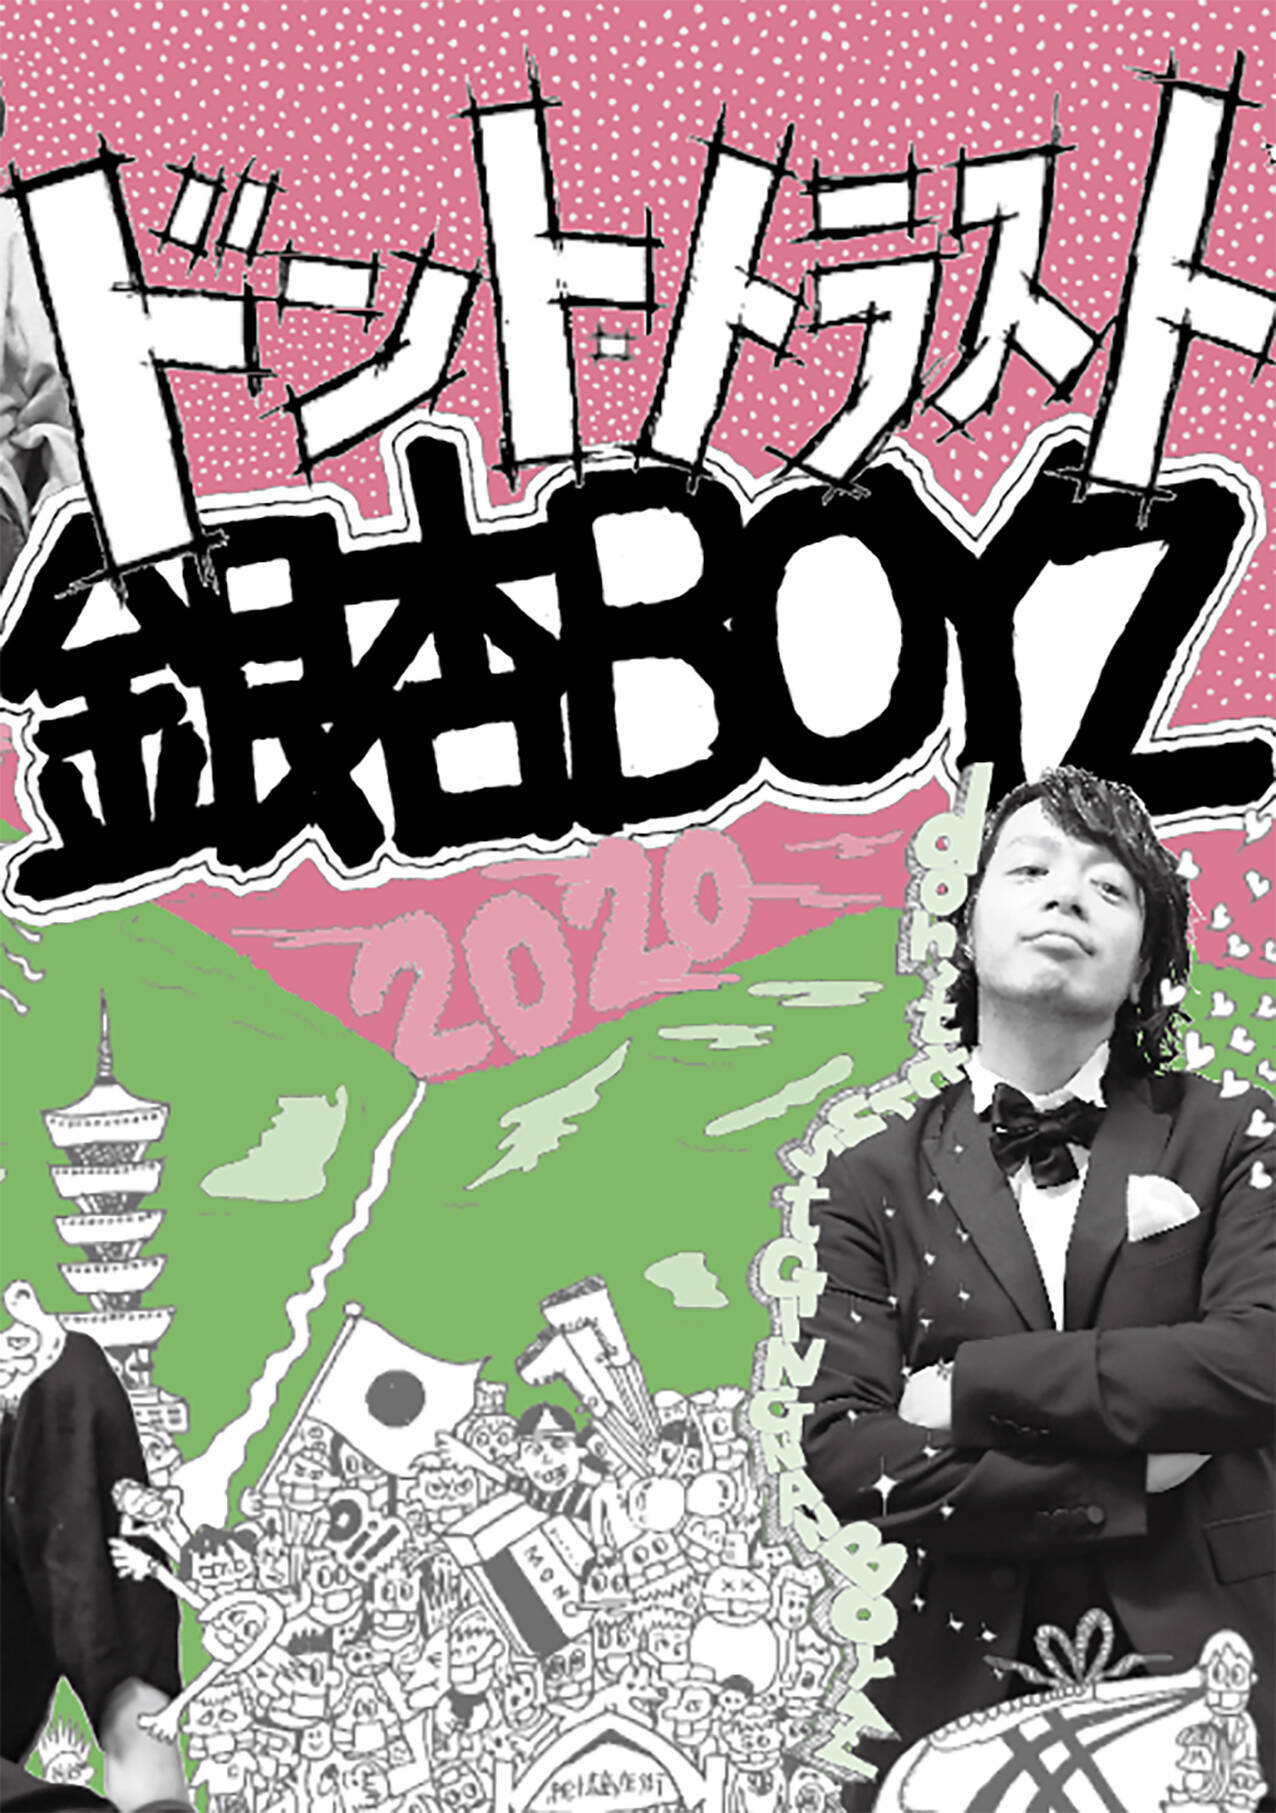 銀杏boyzの近年の活動をまとめた書籍 ドント トラスト銀杏boyz 発売 年7月22日 エキサイトニュース